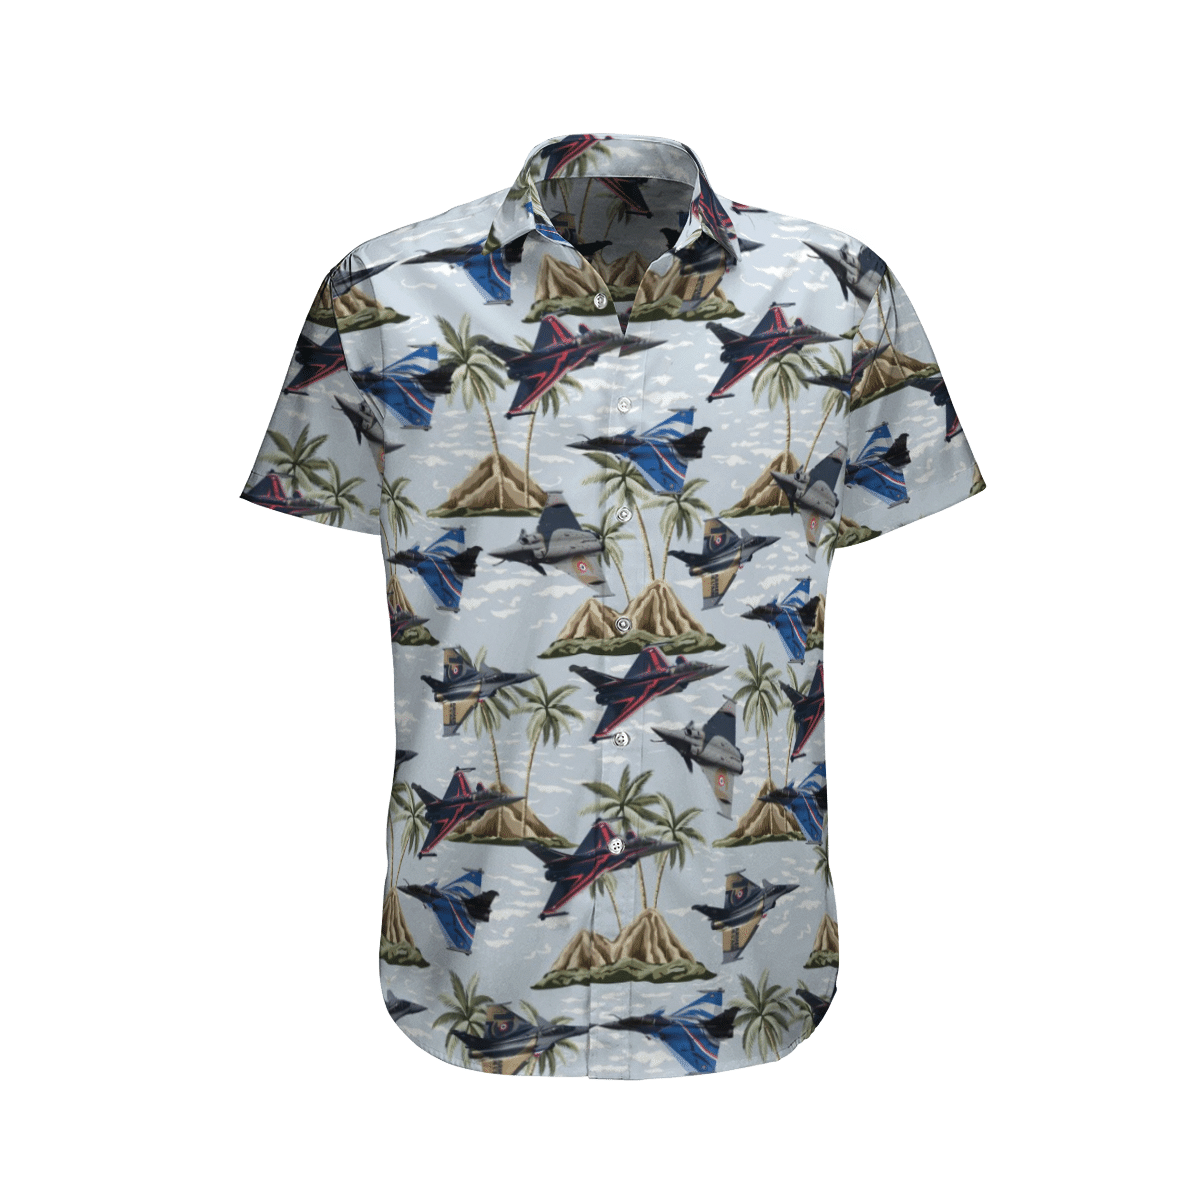 Beautiful Hawaiian shirts for you 241